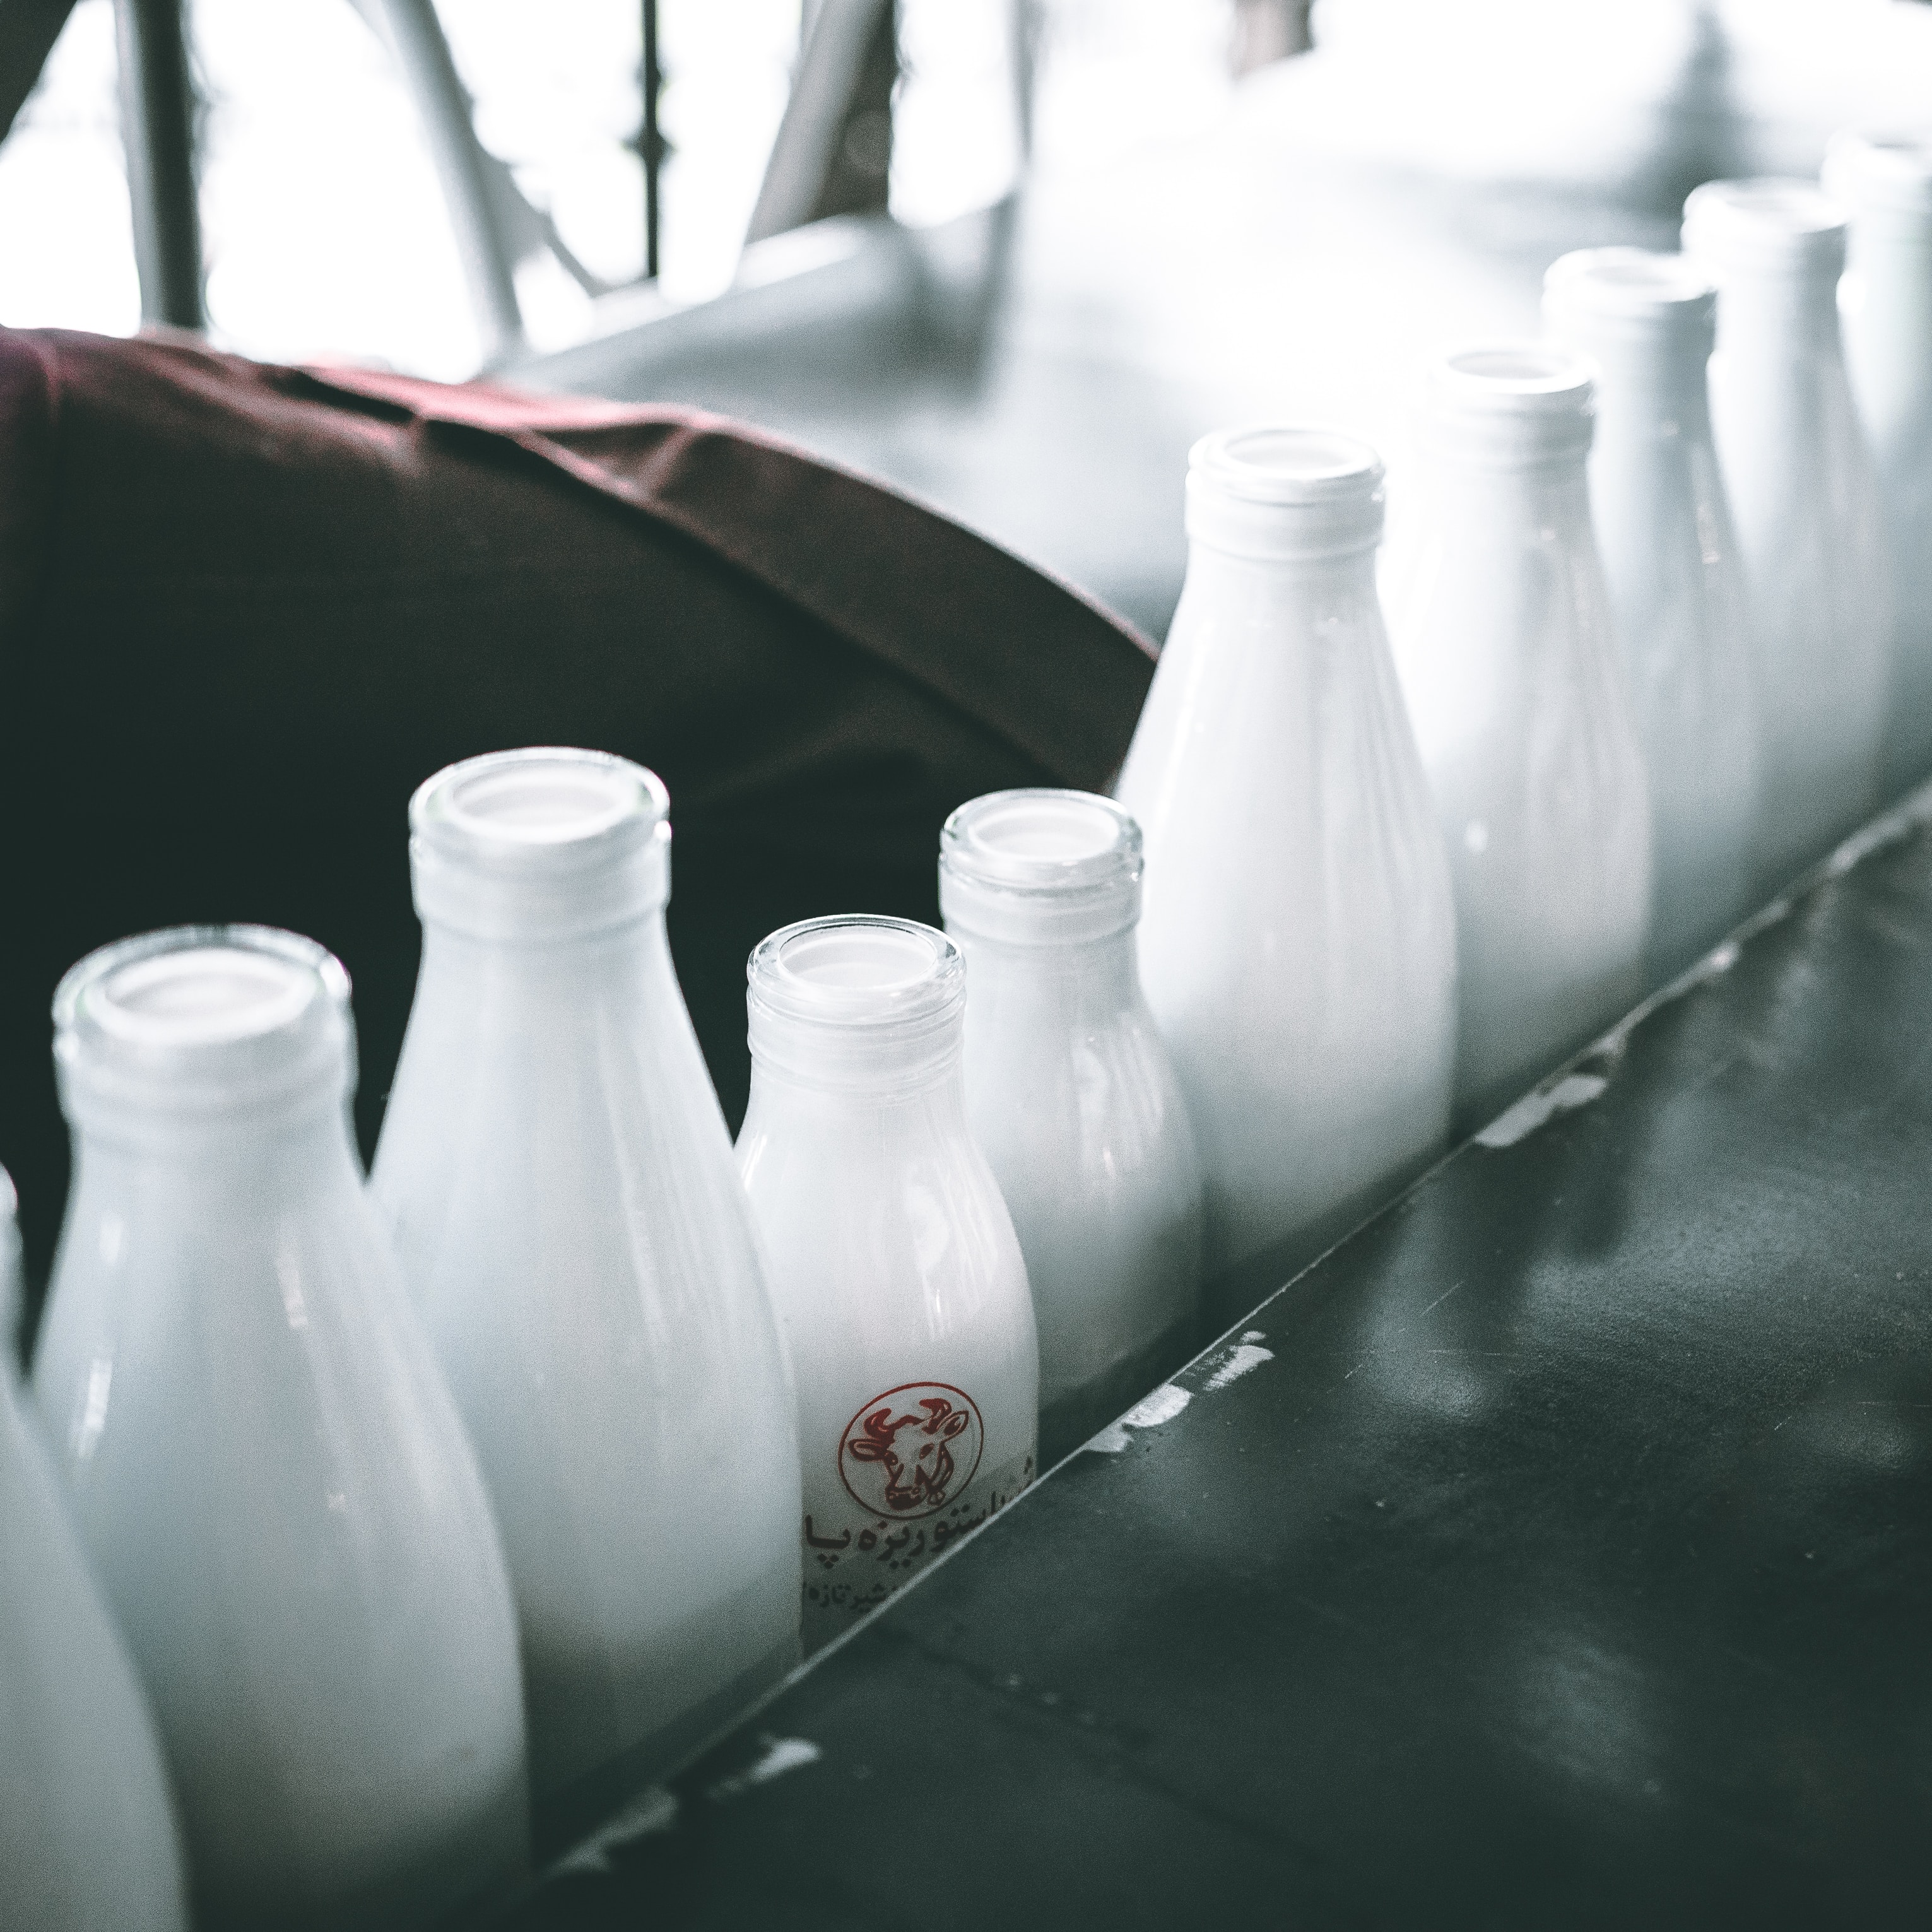 하얀색 병에 담긴 우유가 컨베이어 벨트에 줄지어 서 있으며, 우유병 쪽으로 햇빛이 들어오는 듯한 모습이다.